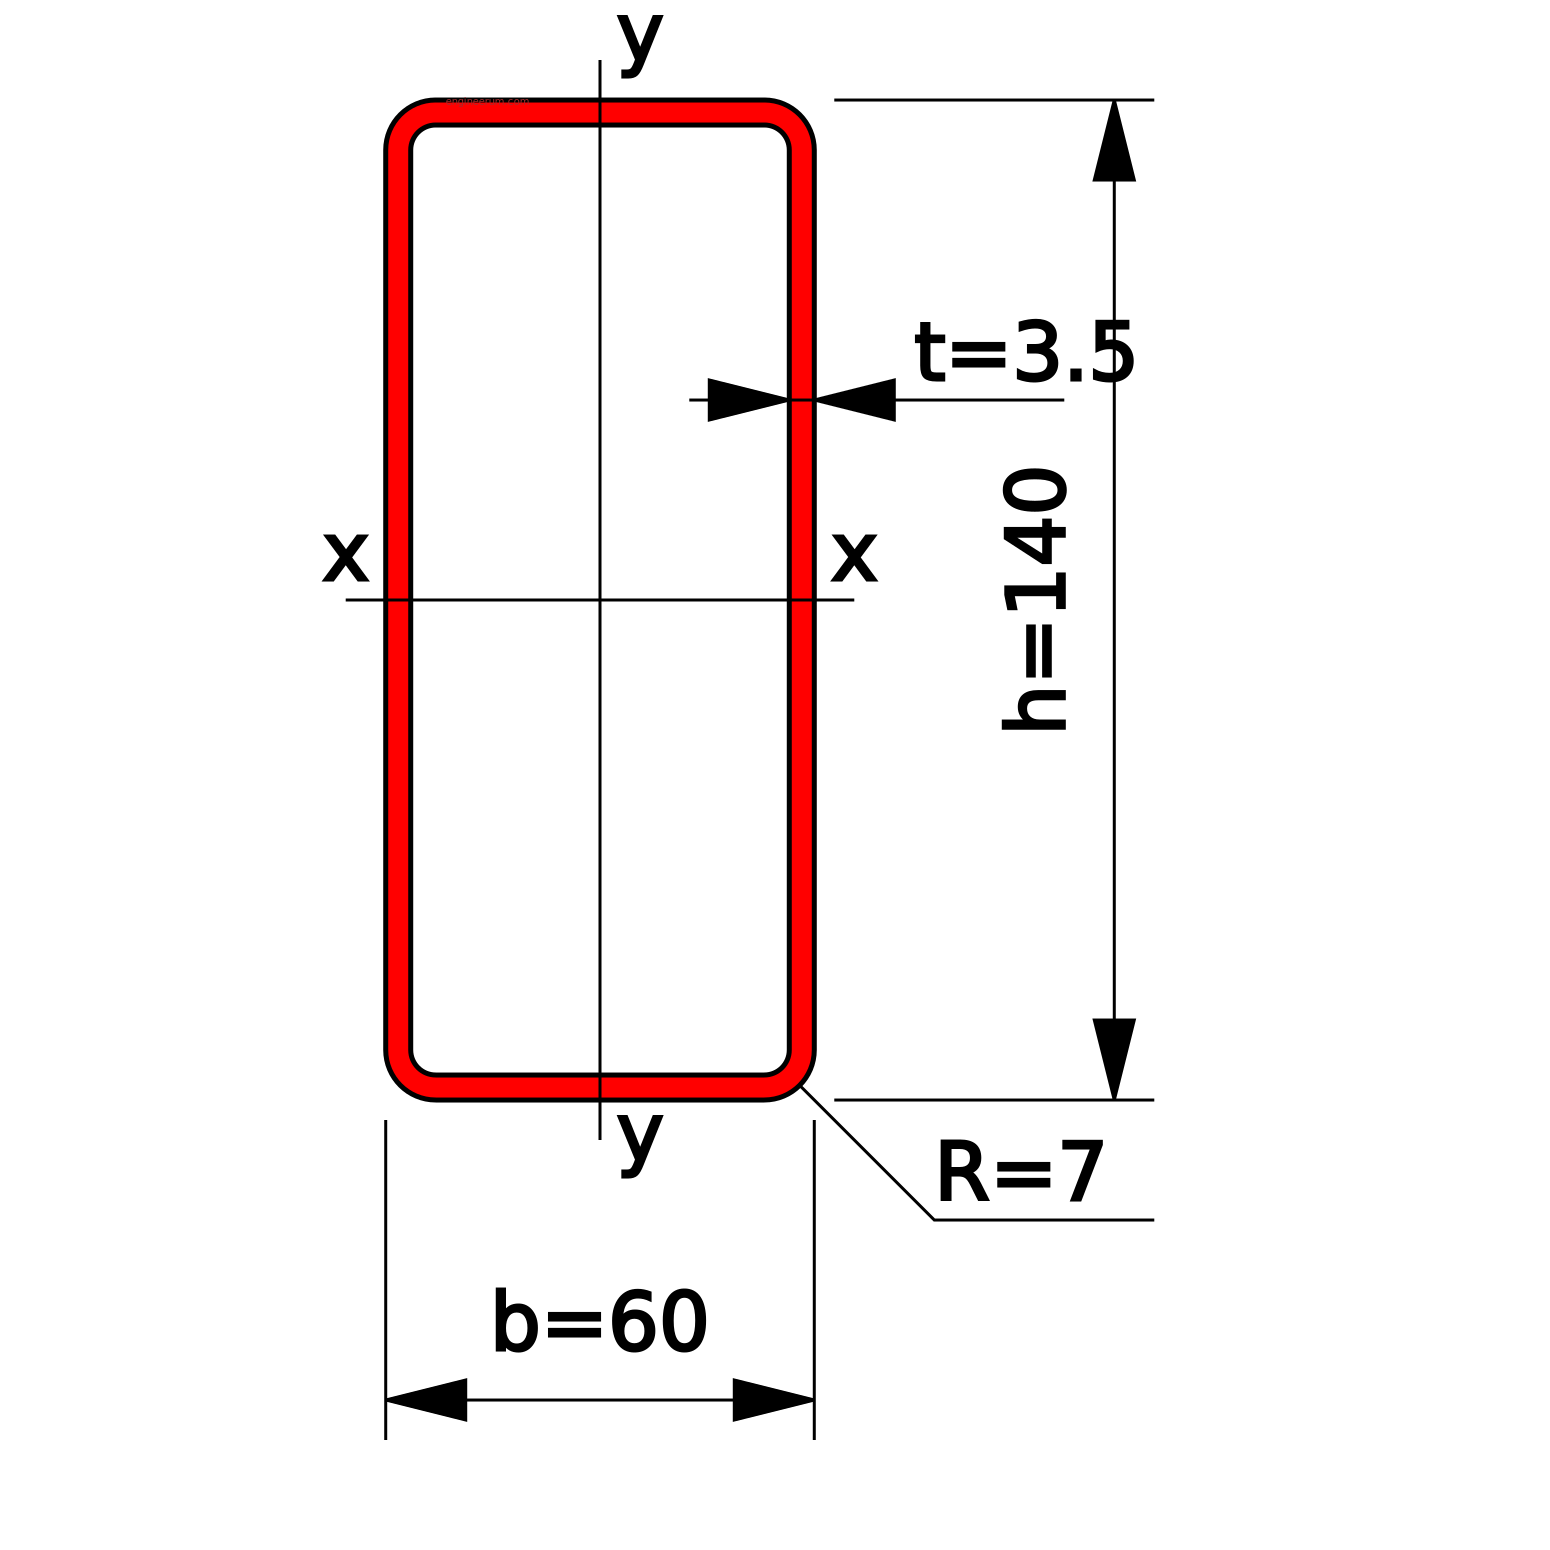 Труба 140x60x3.5 прямоугольная по ГОСТ 30245-2003. Размеры